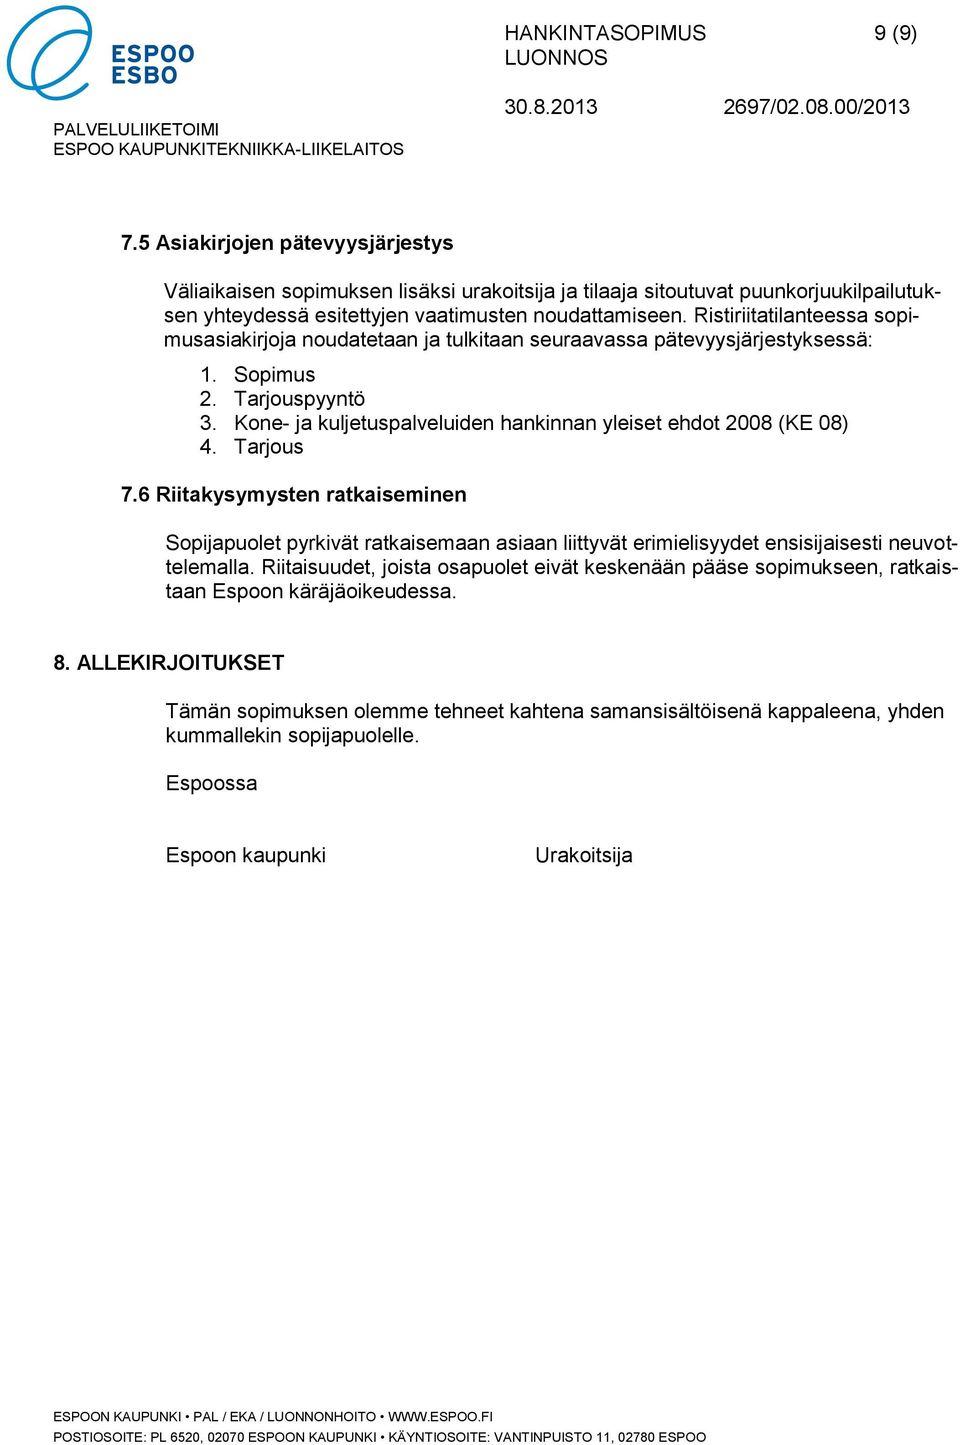 Kone- ja kuljetuspalveluiden hankinnan yleiset ehdot 2008 (KE 08) 4. Tarjous 7.